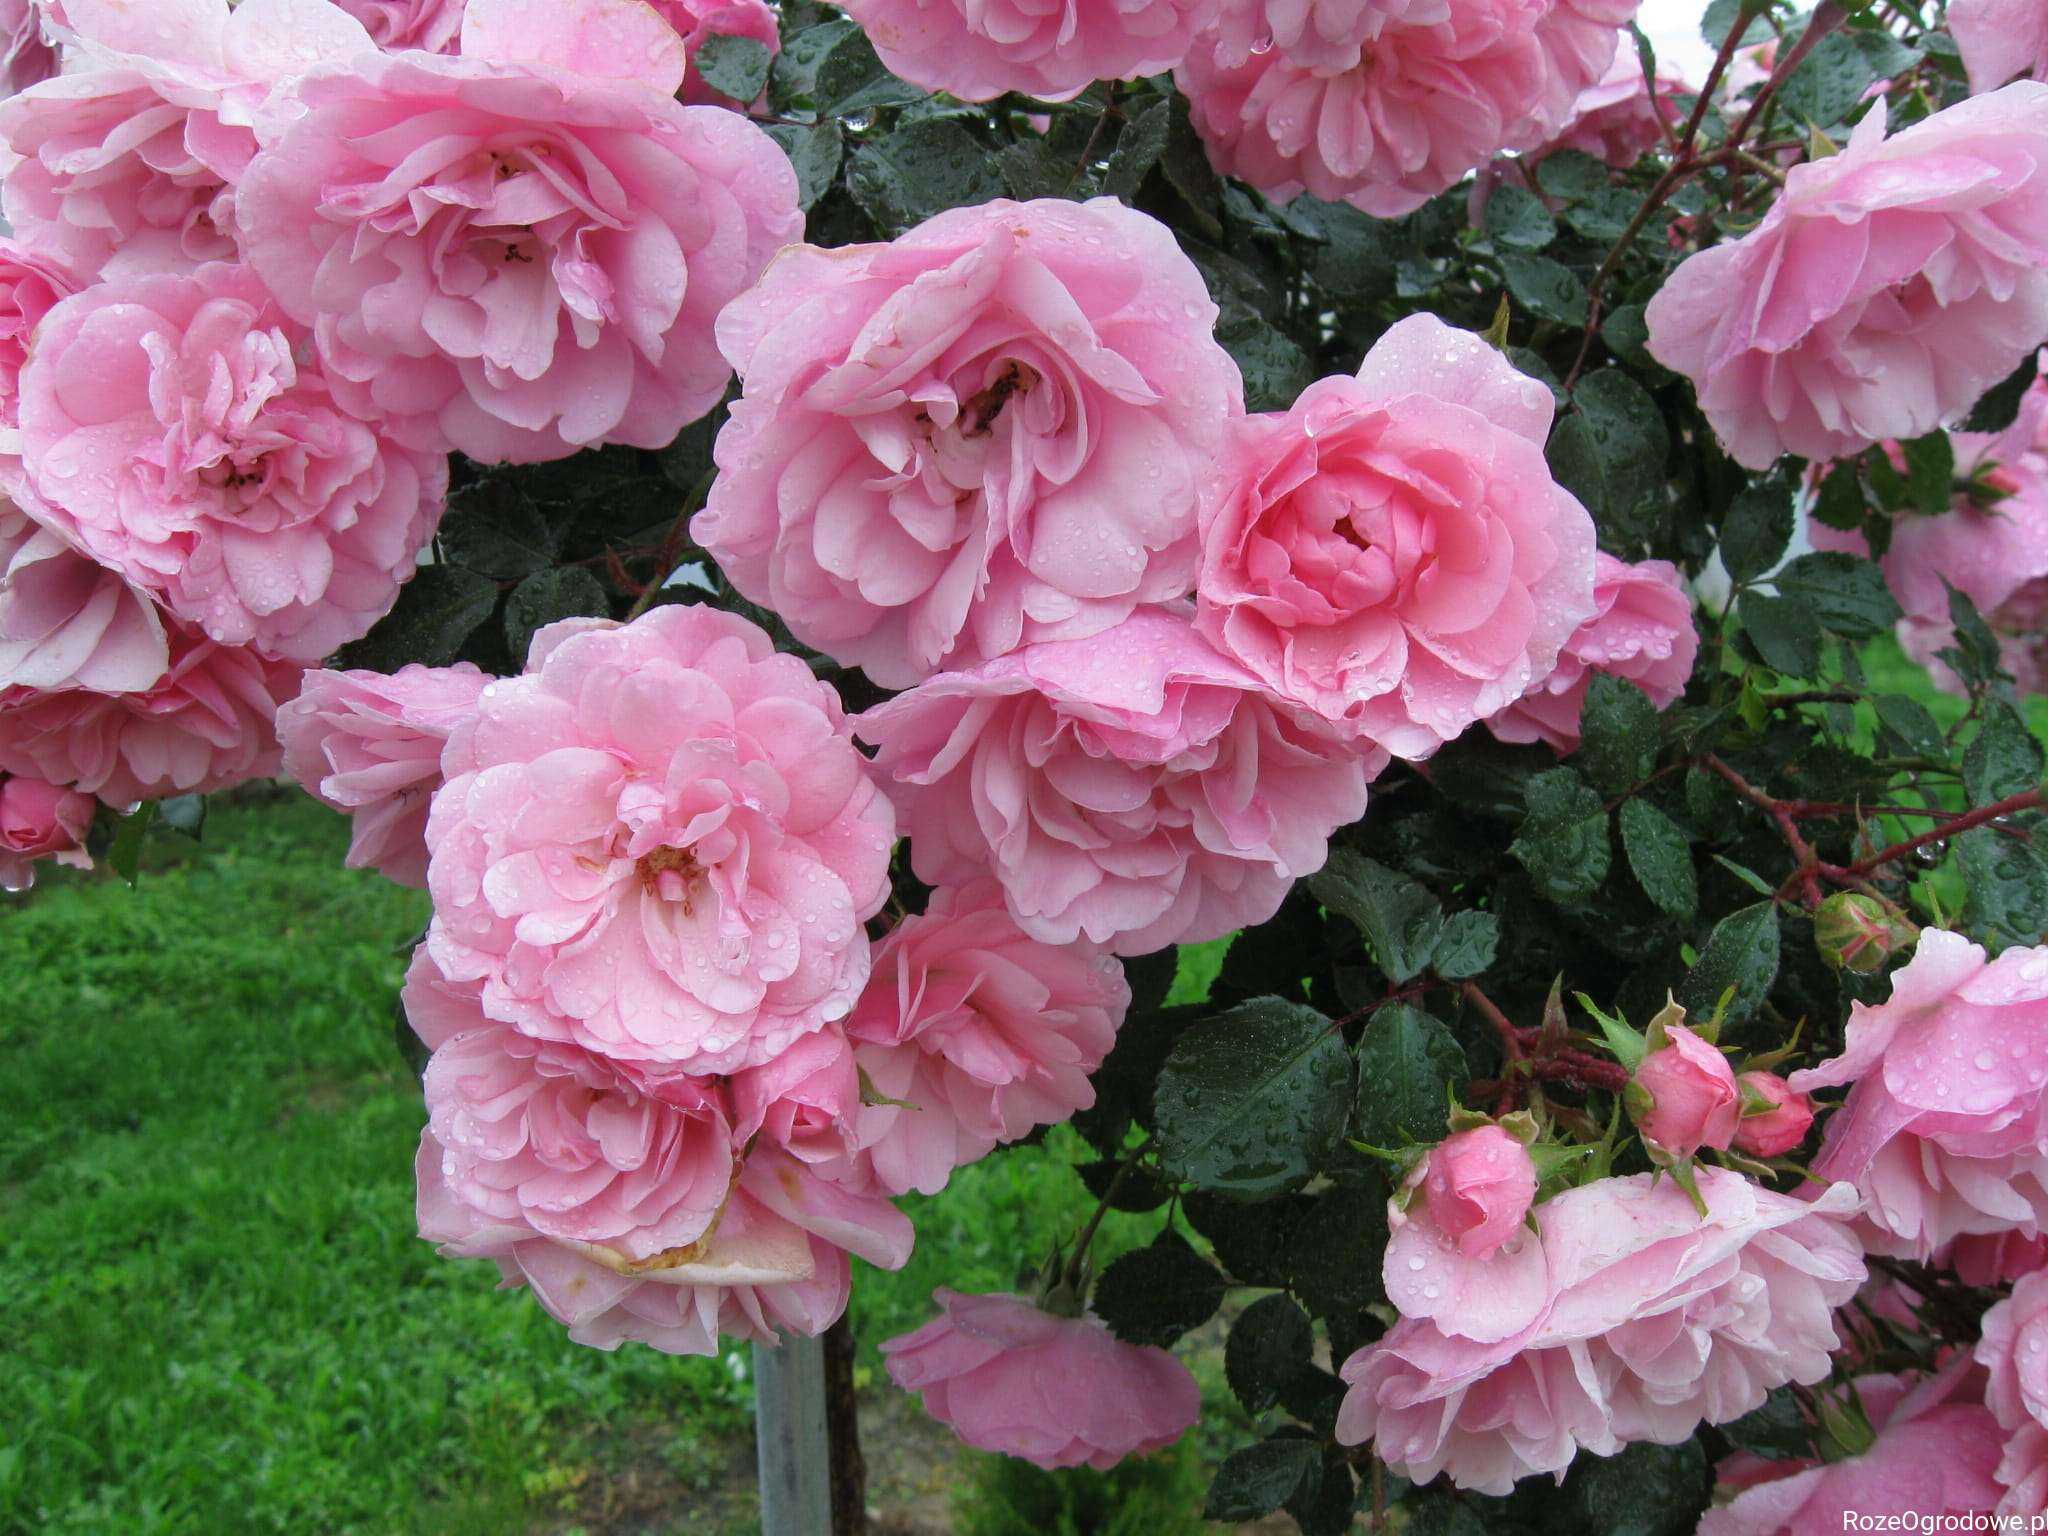 Как посадить и вырастить в саду нежную и изящную розу боника